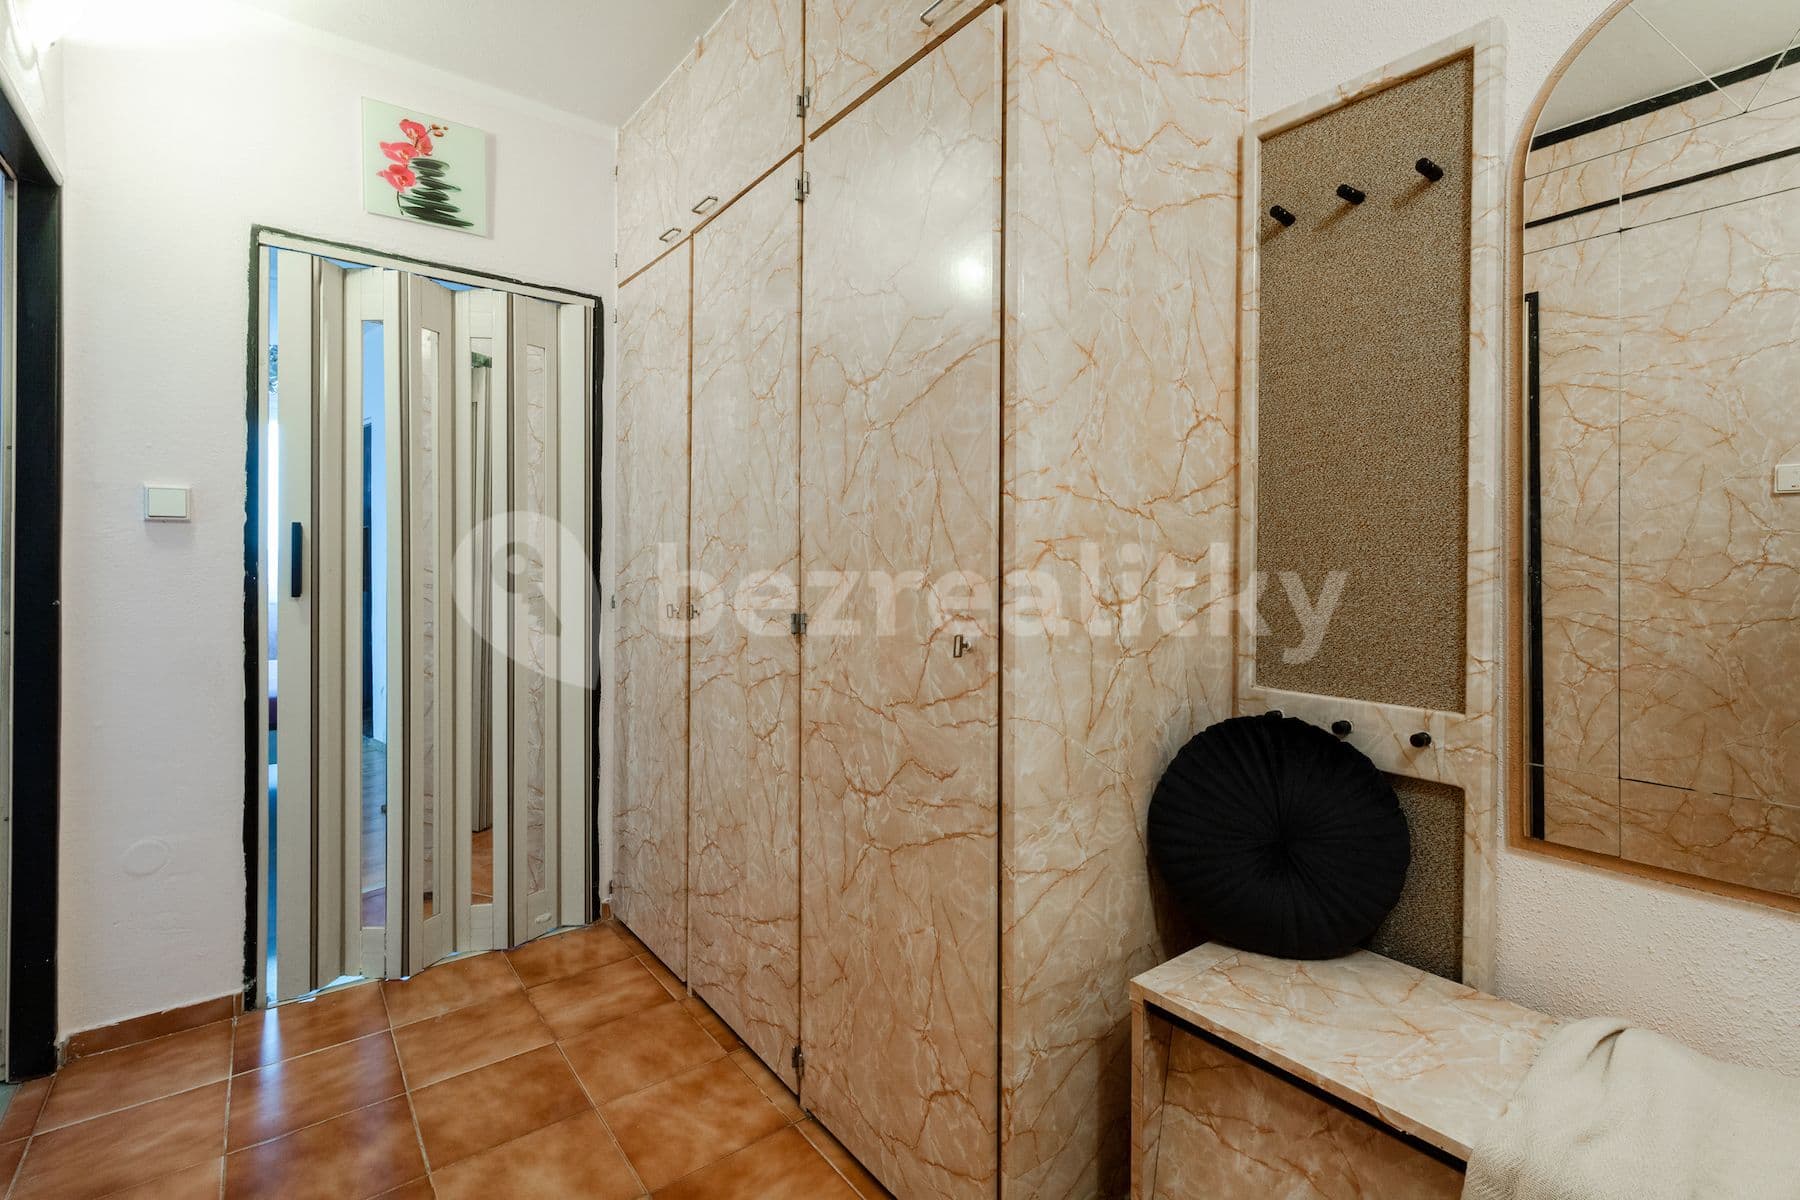 1 bedroom with open-plan kitchen flat for sale, 50 m², Milánská, Prague, Prague